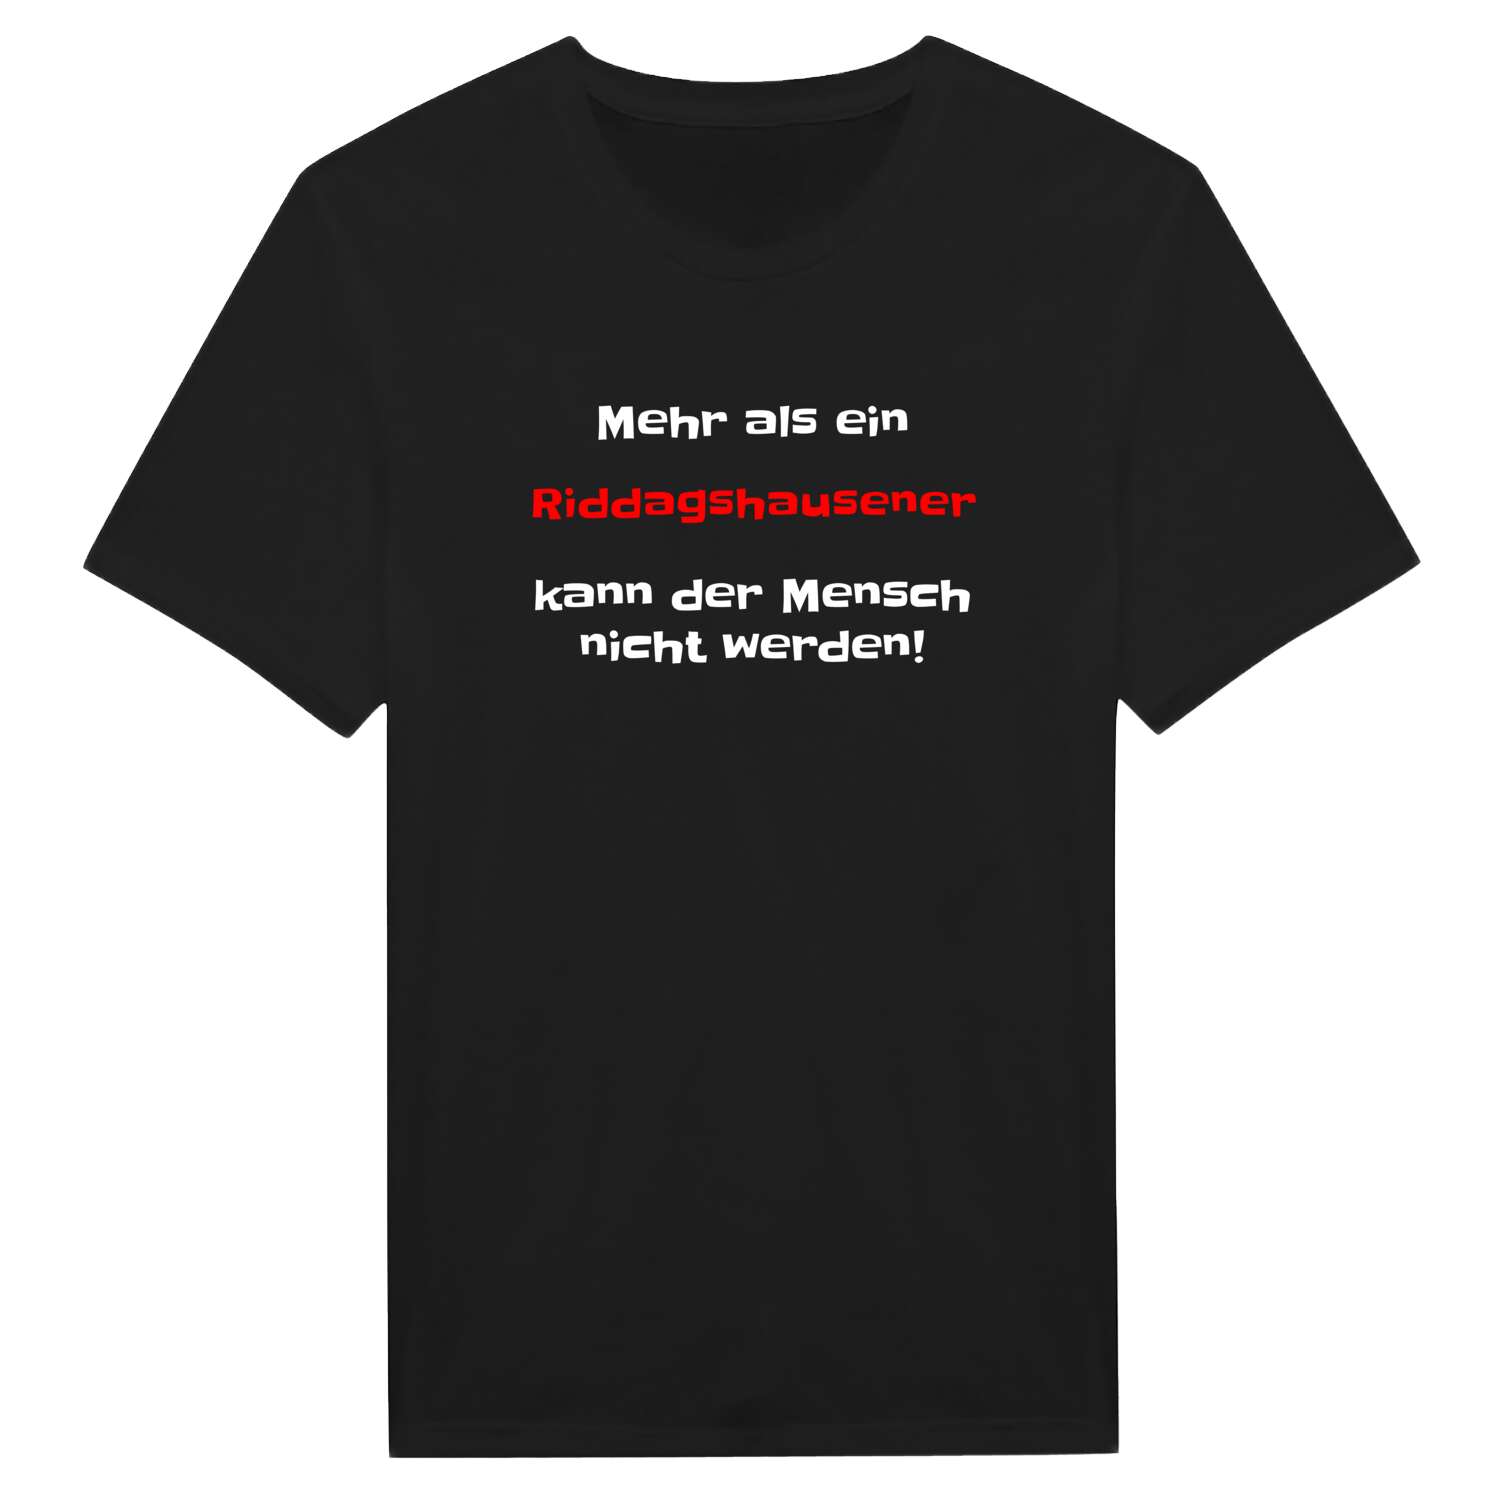 Riddagshausen T-Shirt »Mehr als ein«